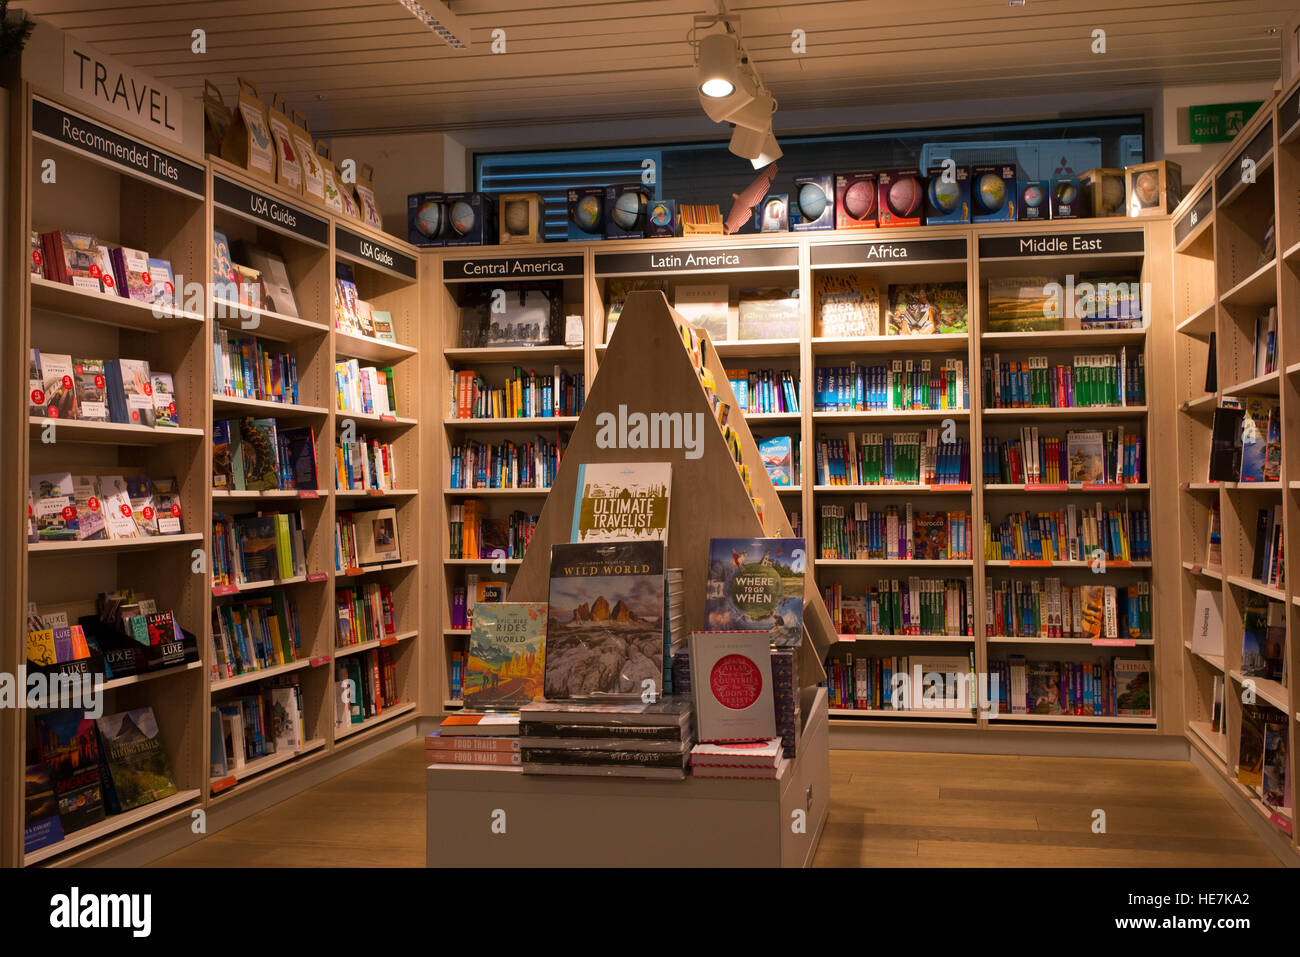 Einrichtung eines modernen Buchhandlung mit hölzernen Regalen voller Bücher. Abschnitt der Reise Bücher und Reiseführer. Stockfoto